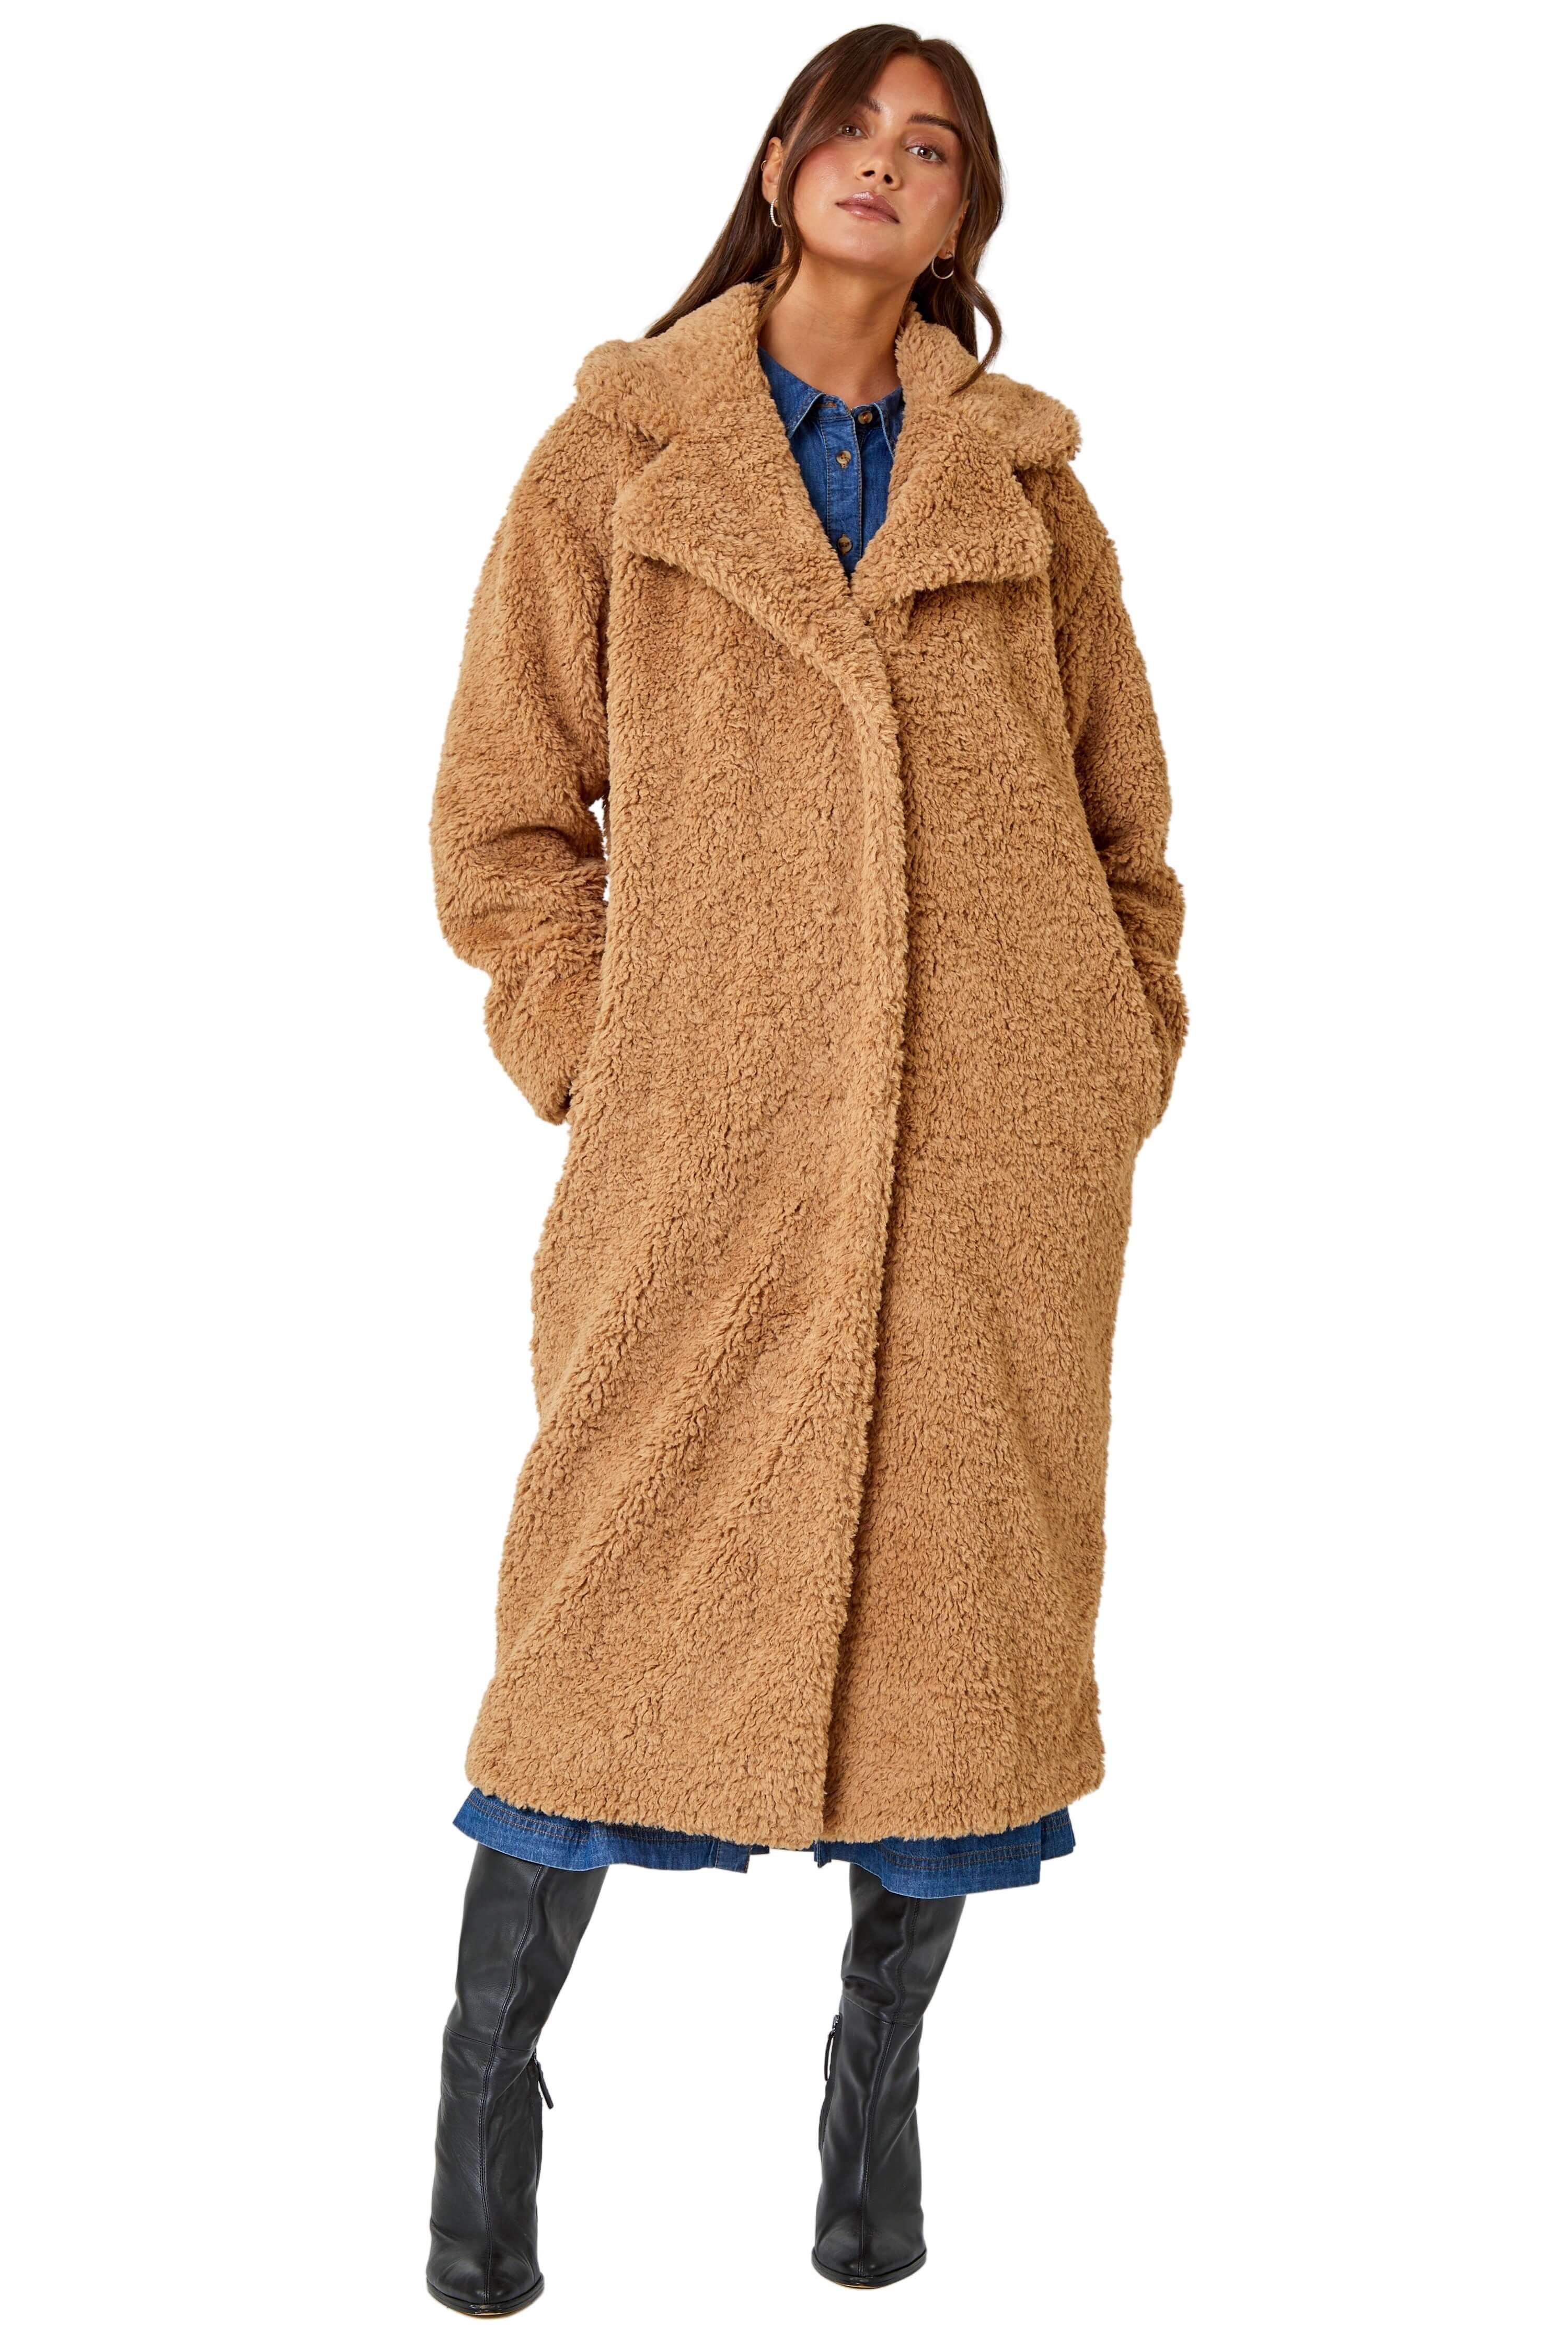 Длинное пальто из искусственного меха Teddy Borg Roman, коричневый женское пальто с меховой подкладкой длинное пальто с воротником из лисьего меха и подкладкой из кроличьего меха уличная зимняя одежда